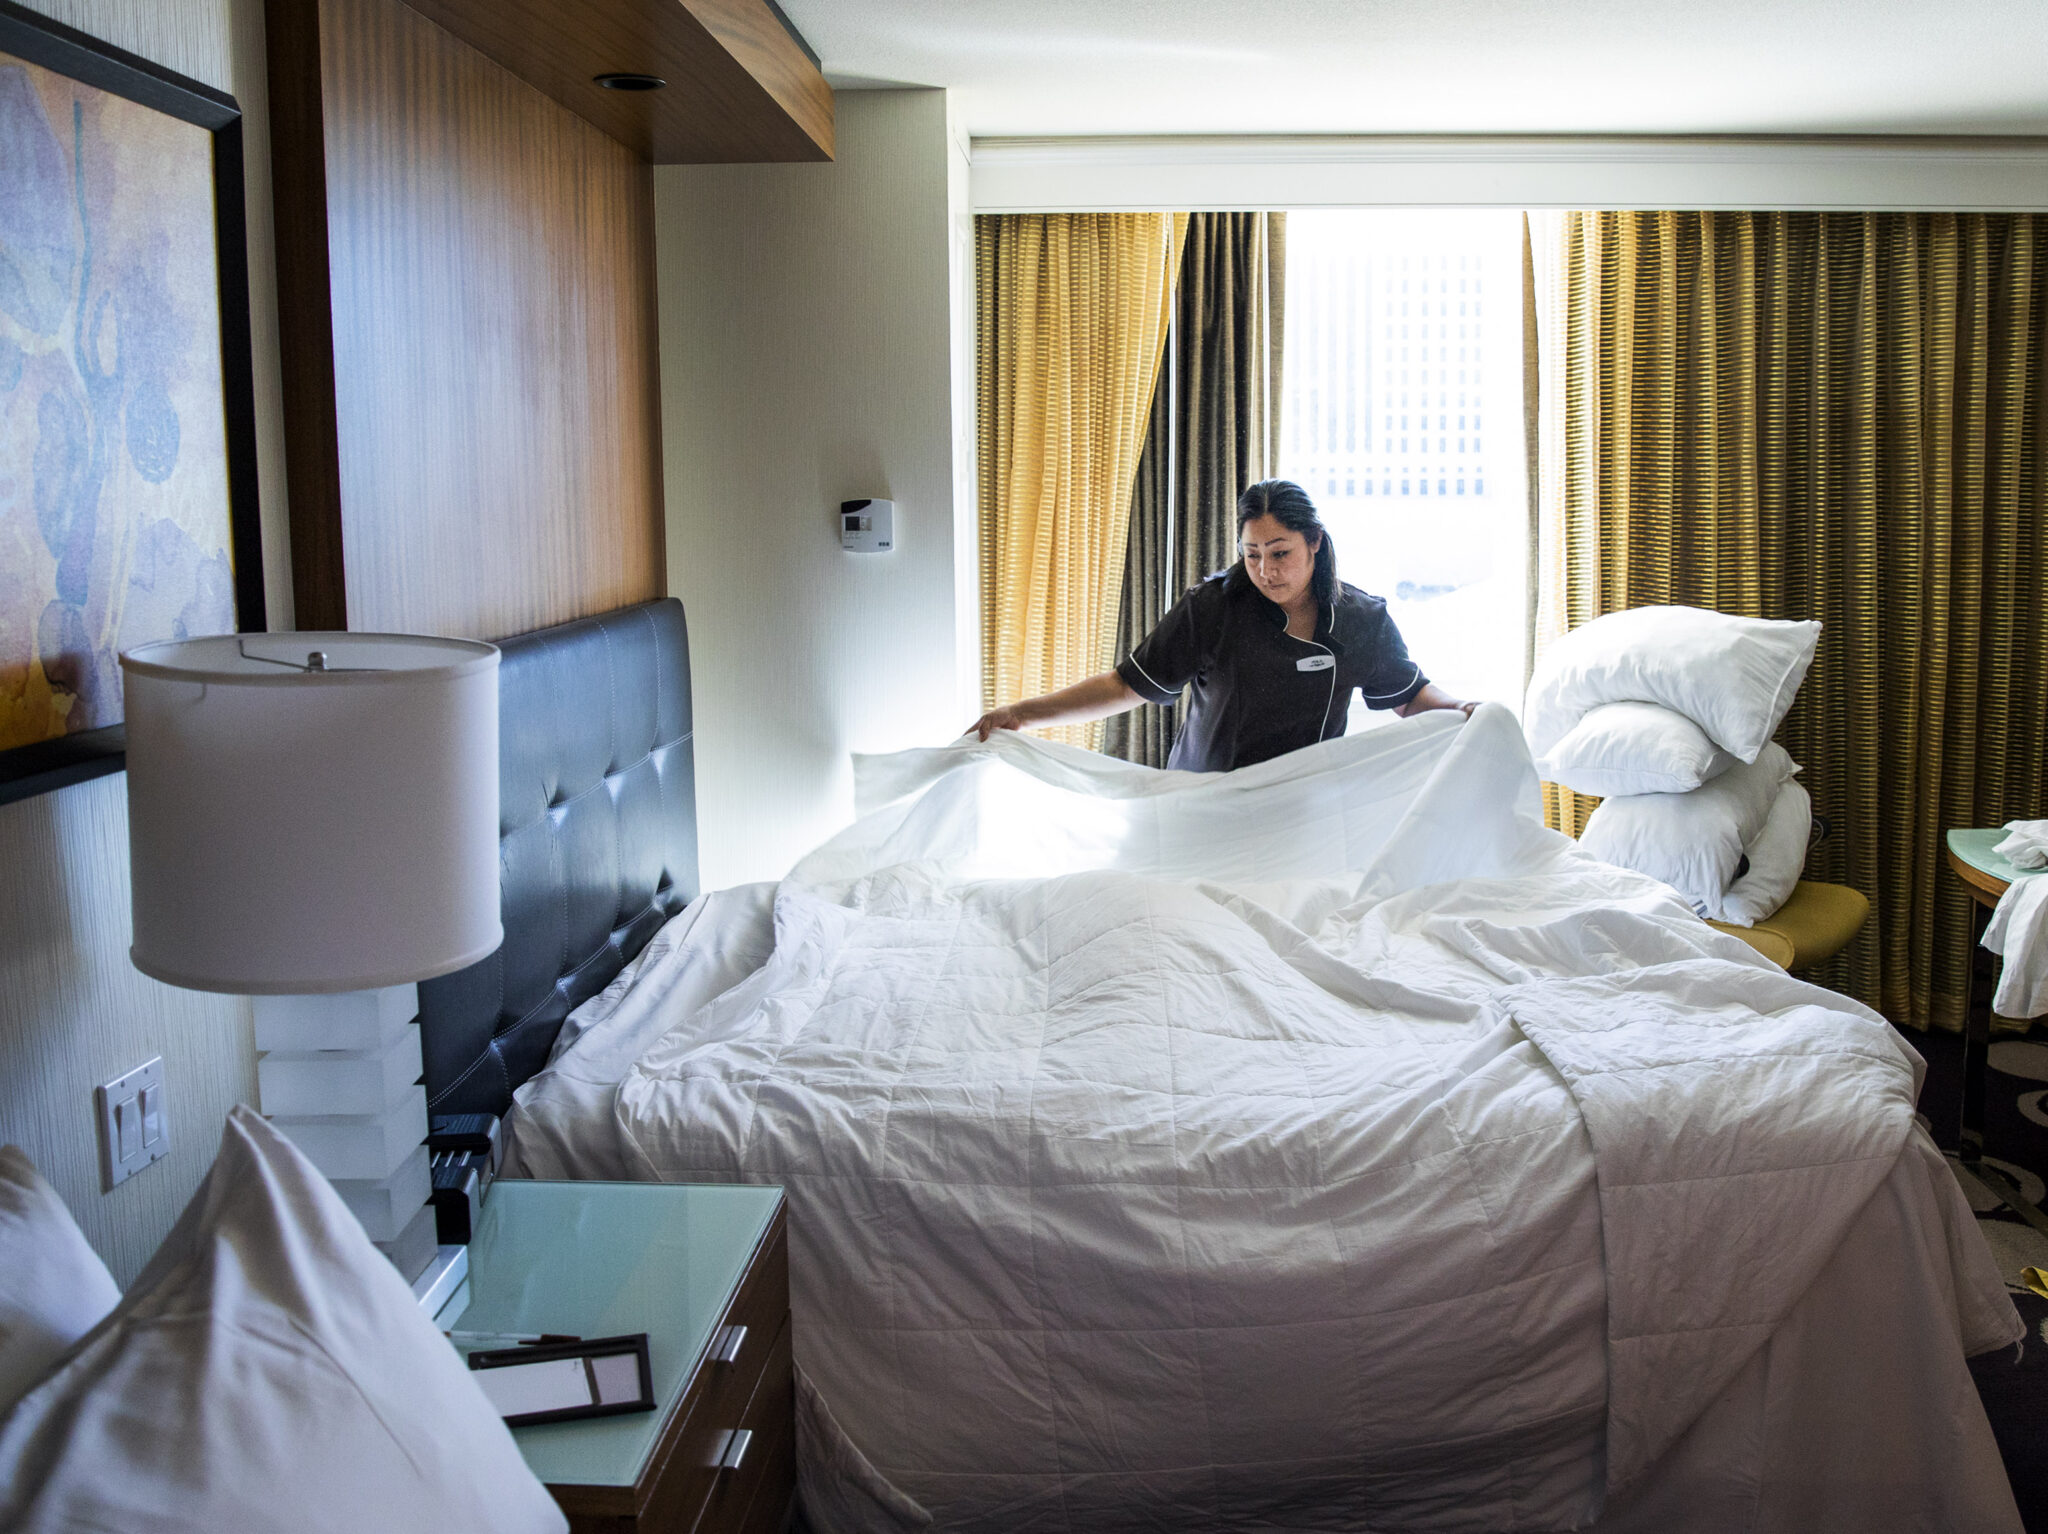 Se limpian a diario las habitaciones de hotel?